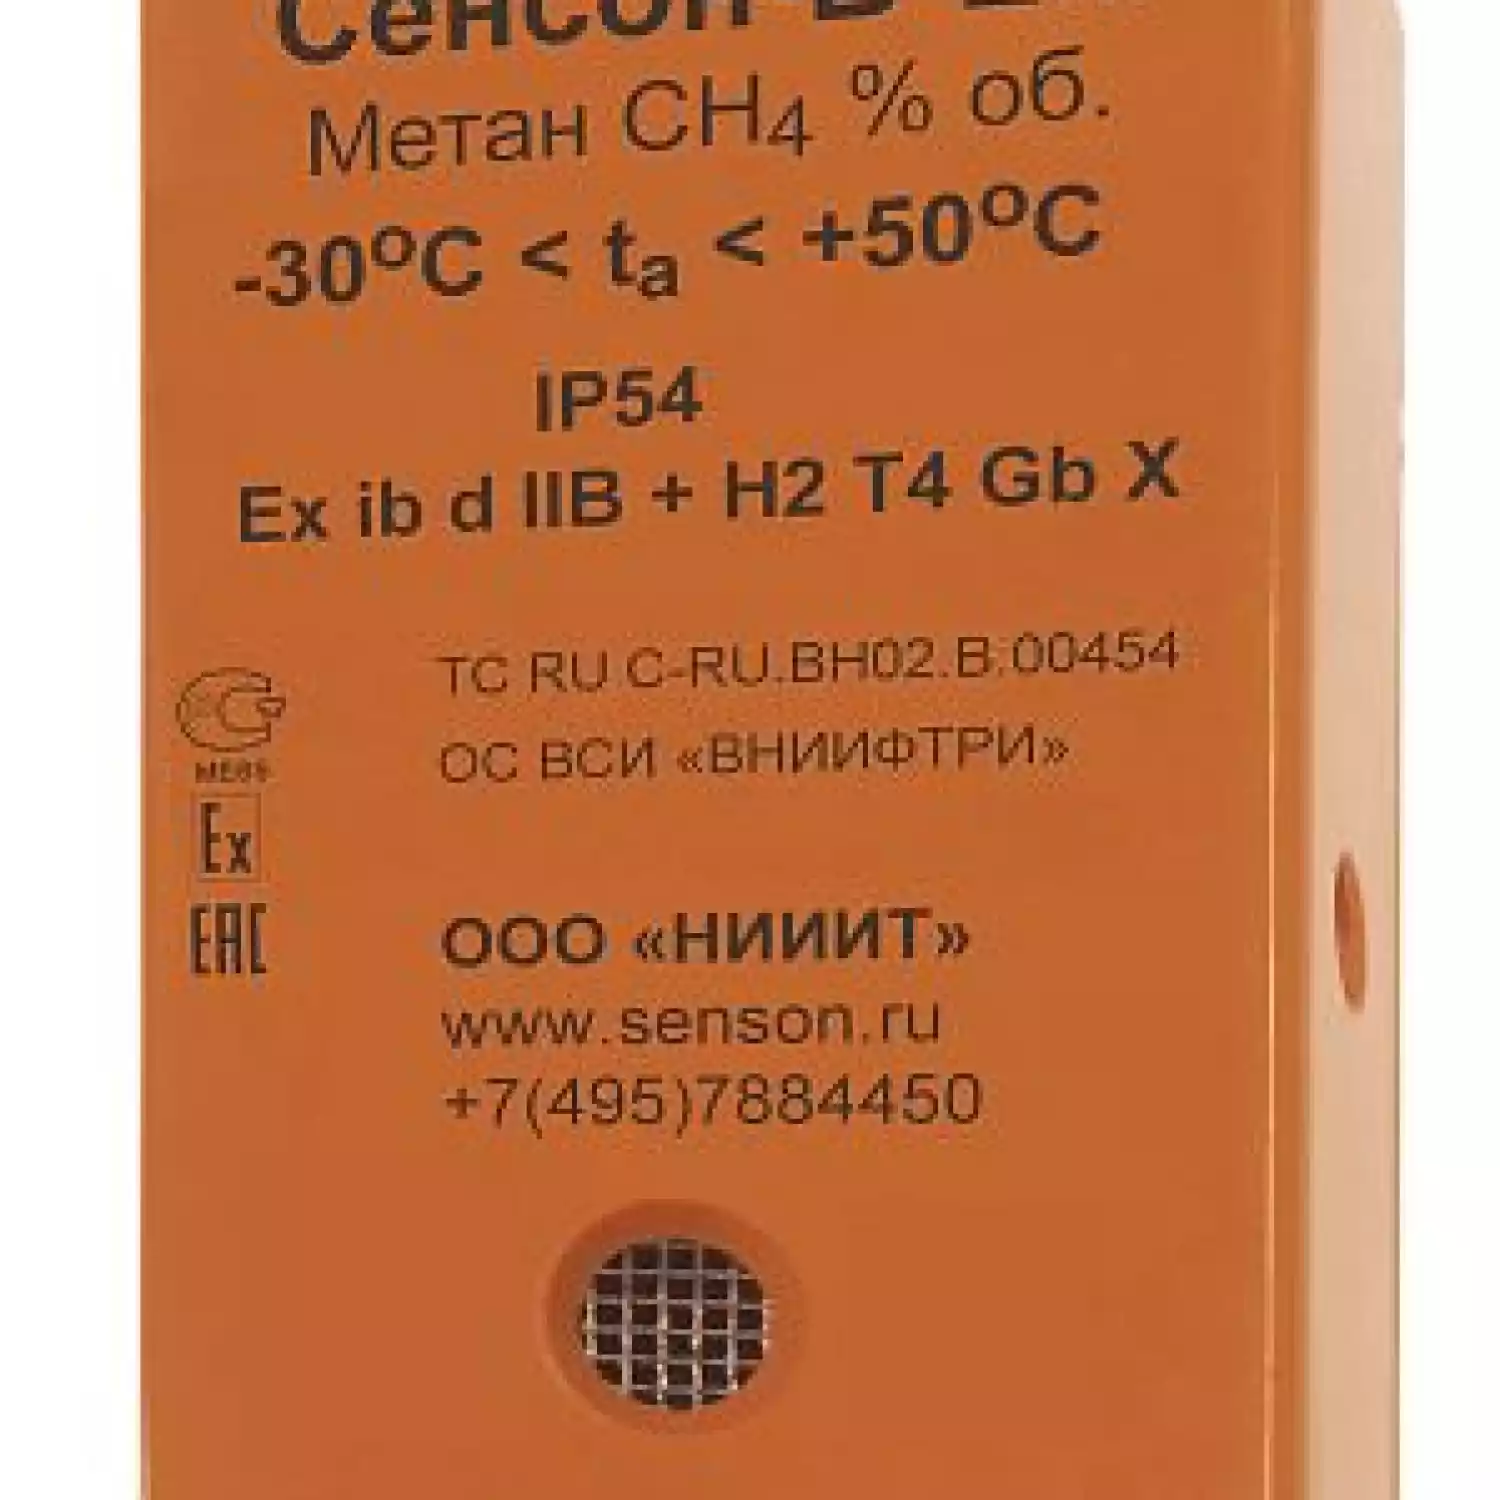 Сенсон-В-1001-NH3-2-ЭХ — газоанализатор индивидуальный - 1